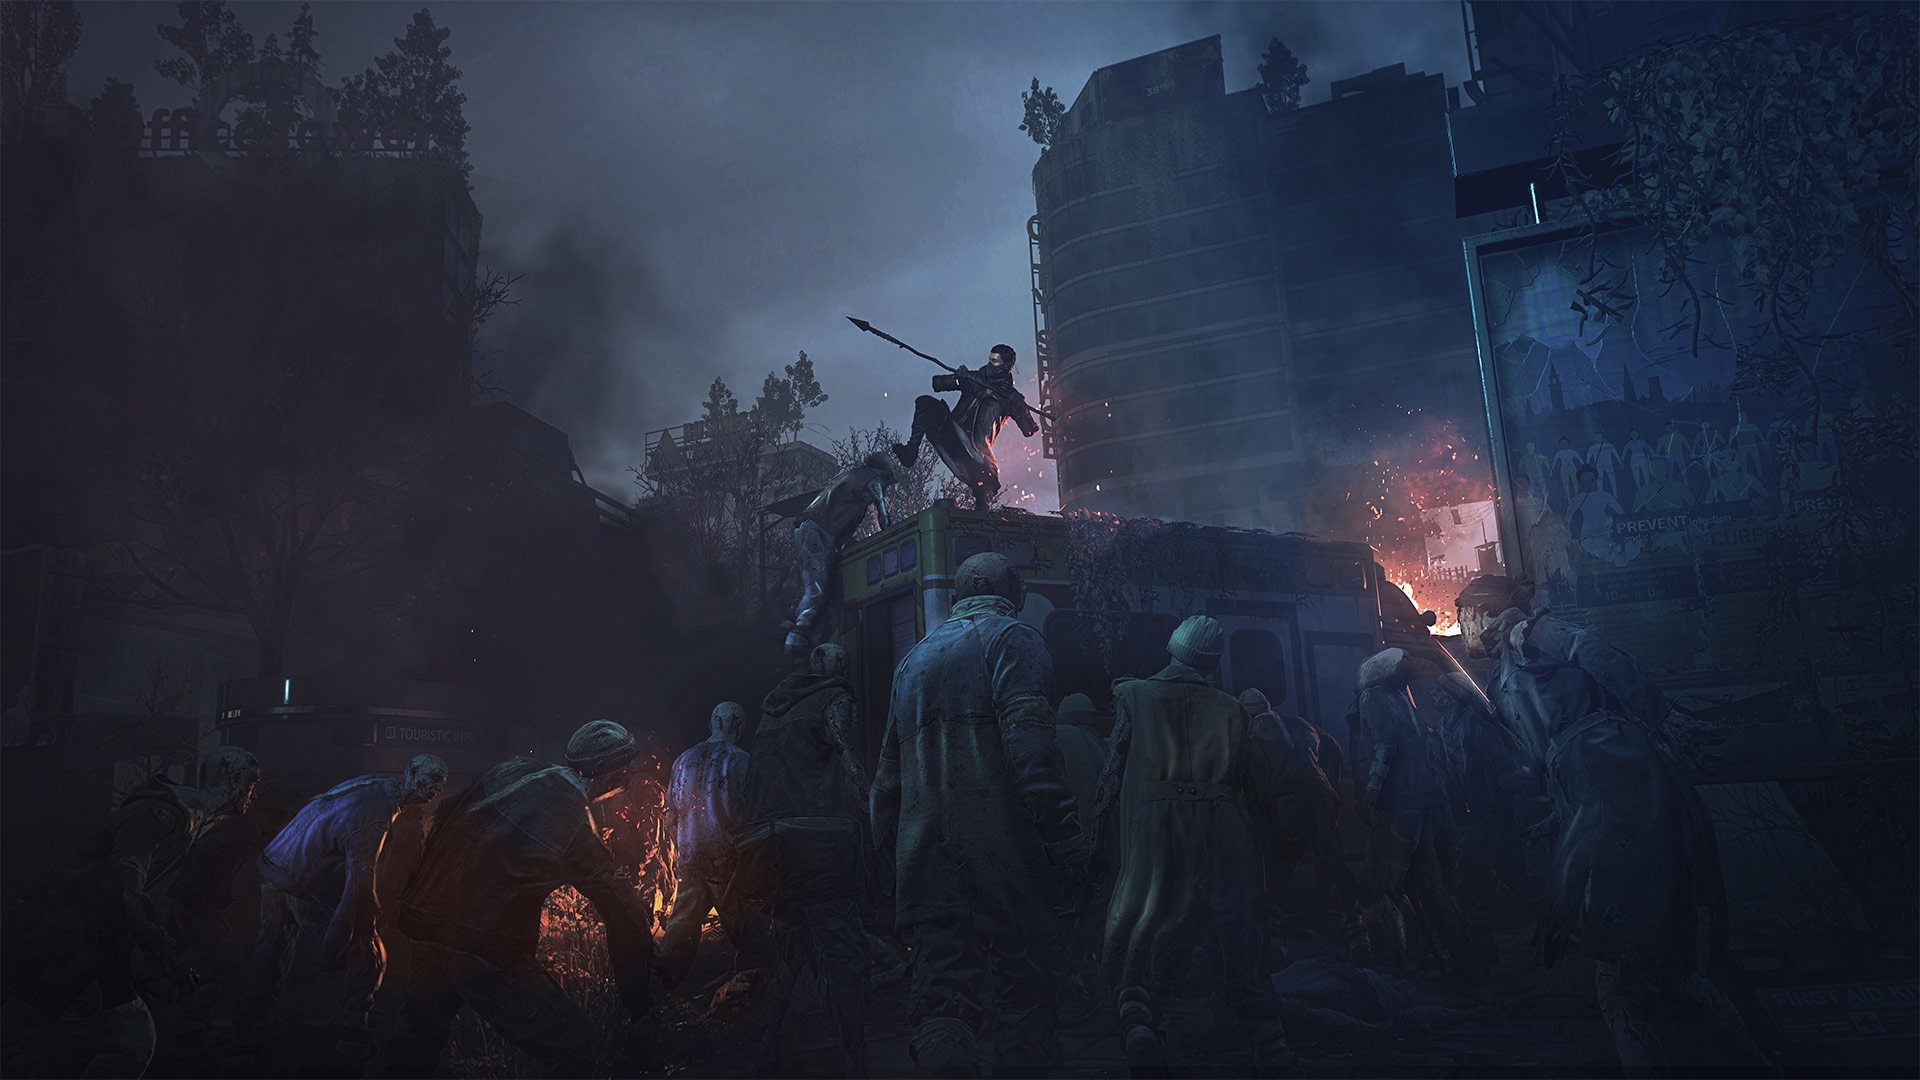 Dans cet article, nous allons couvrir la nouvelle mise à jour de Dying Light 2, qui introduit de nombreuses nouvelles fonctionnalités dans le jeu de survie populaire. 